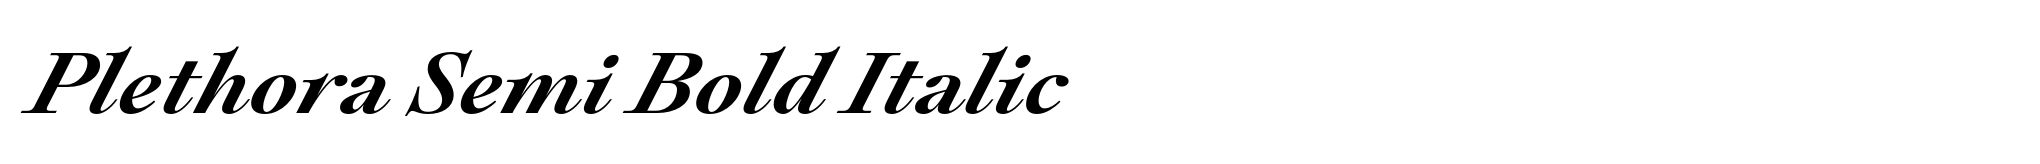 Plethora Semi Bold Italic image